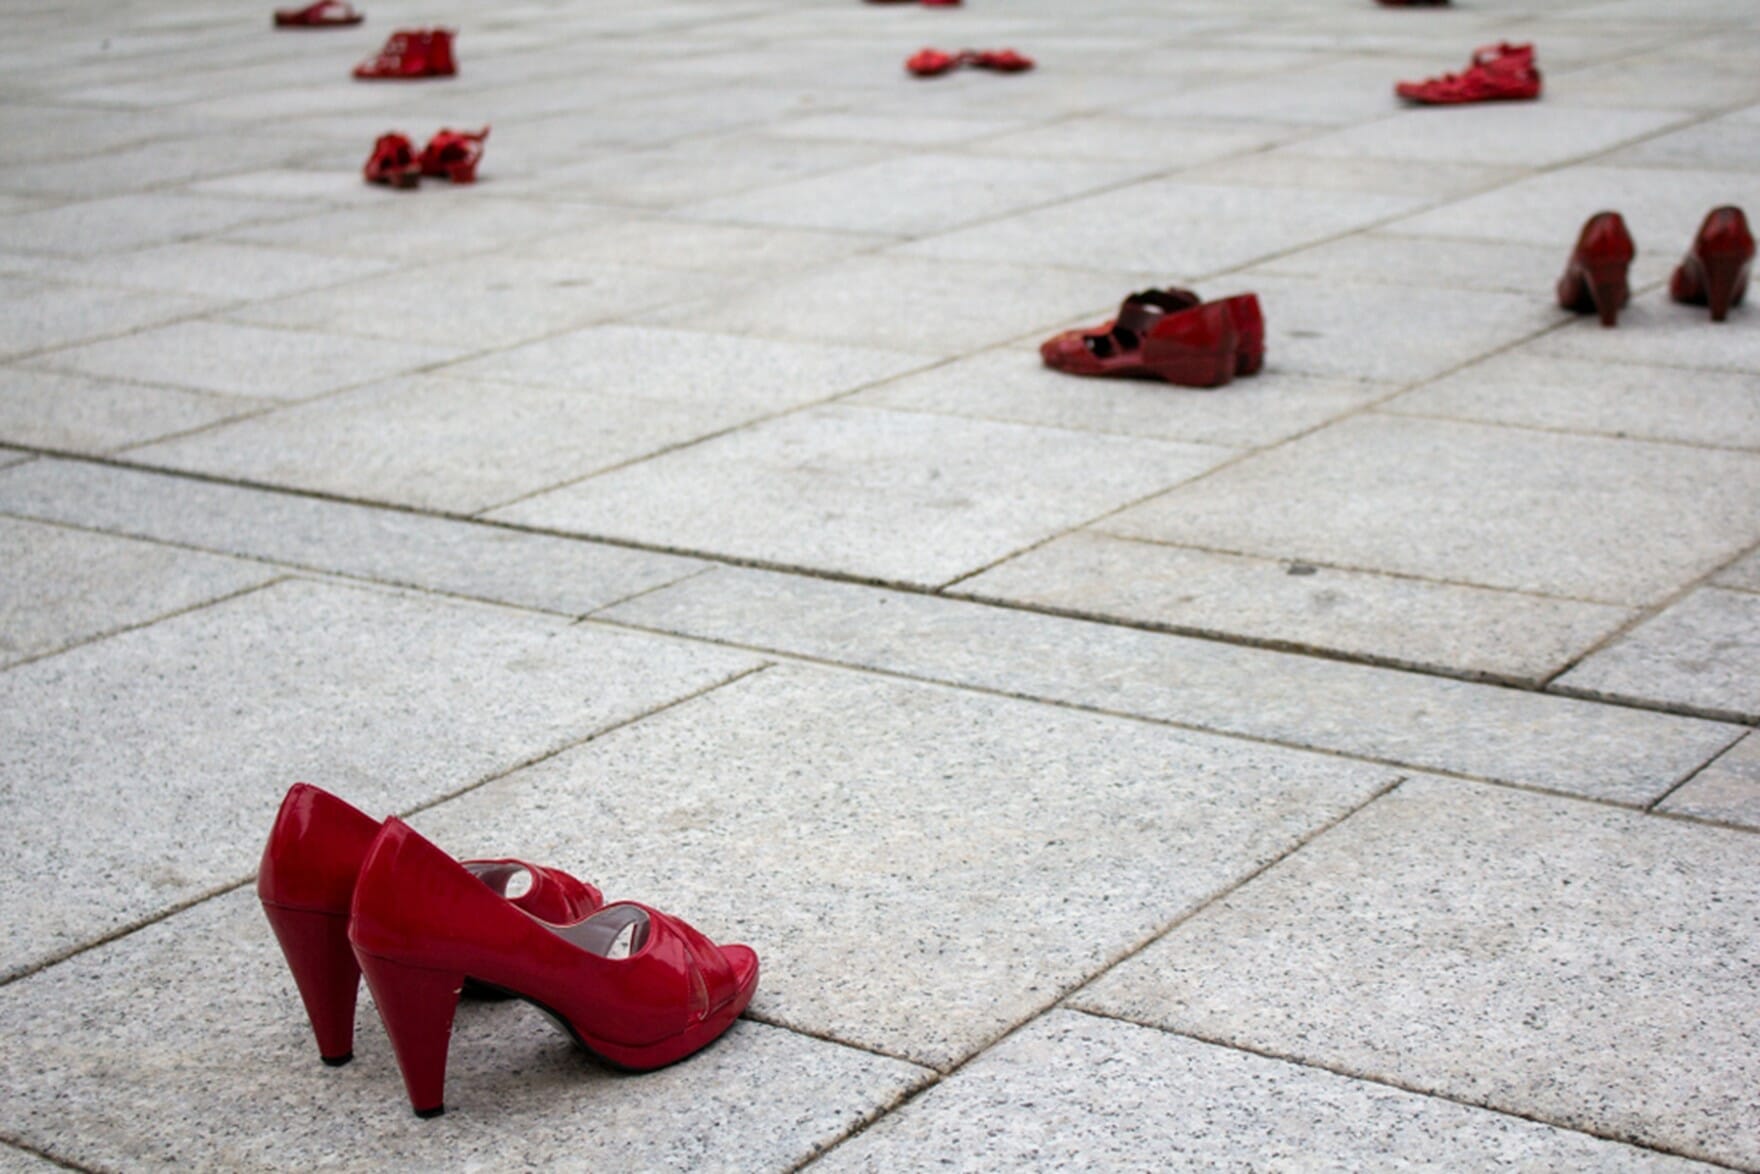 Desde 2009, el símbolo feminista que ha cruzado las fronteras culturales y geográficas han sido los zapatos rojos.